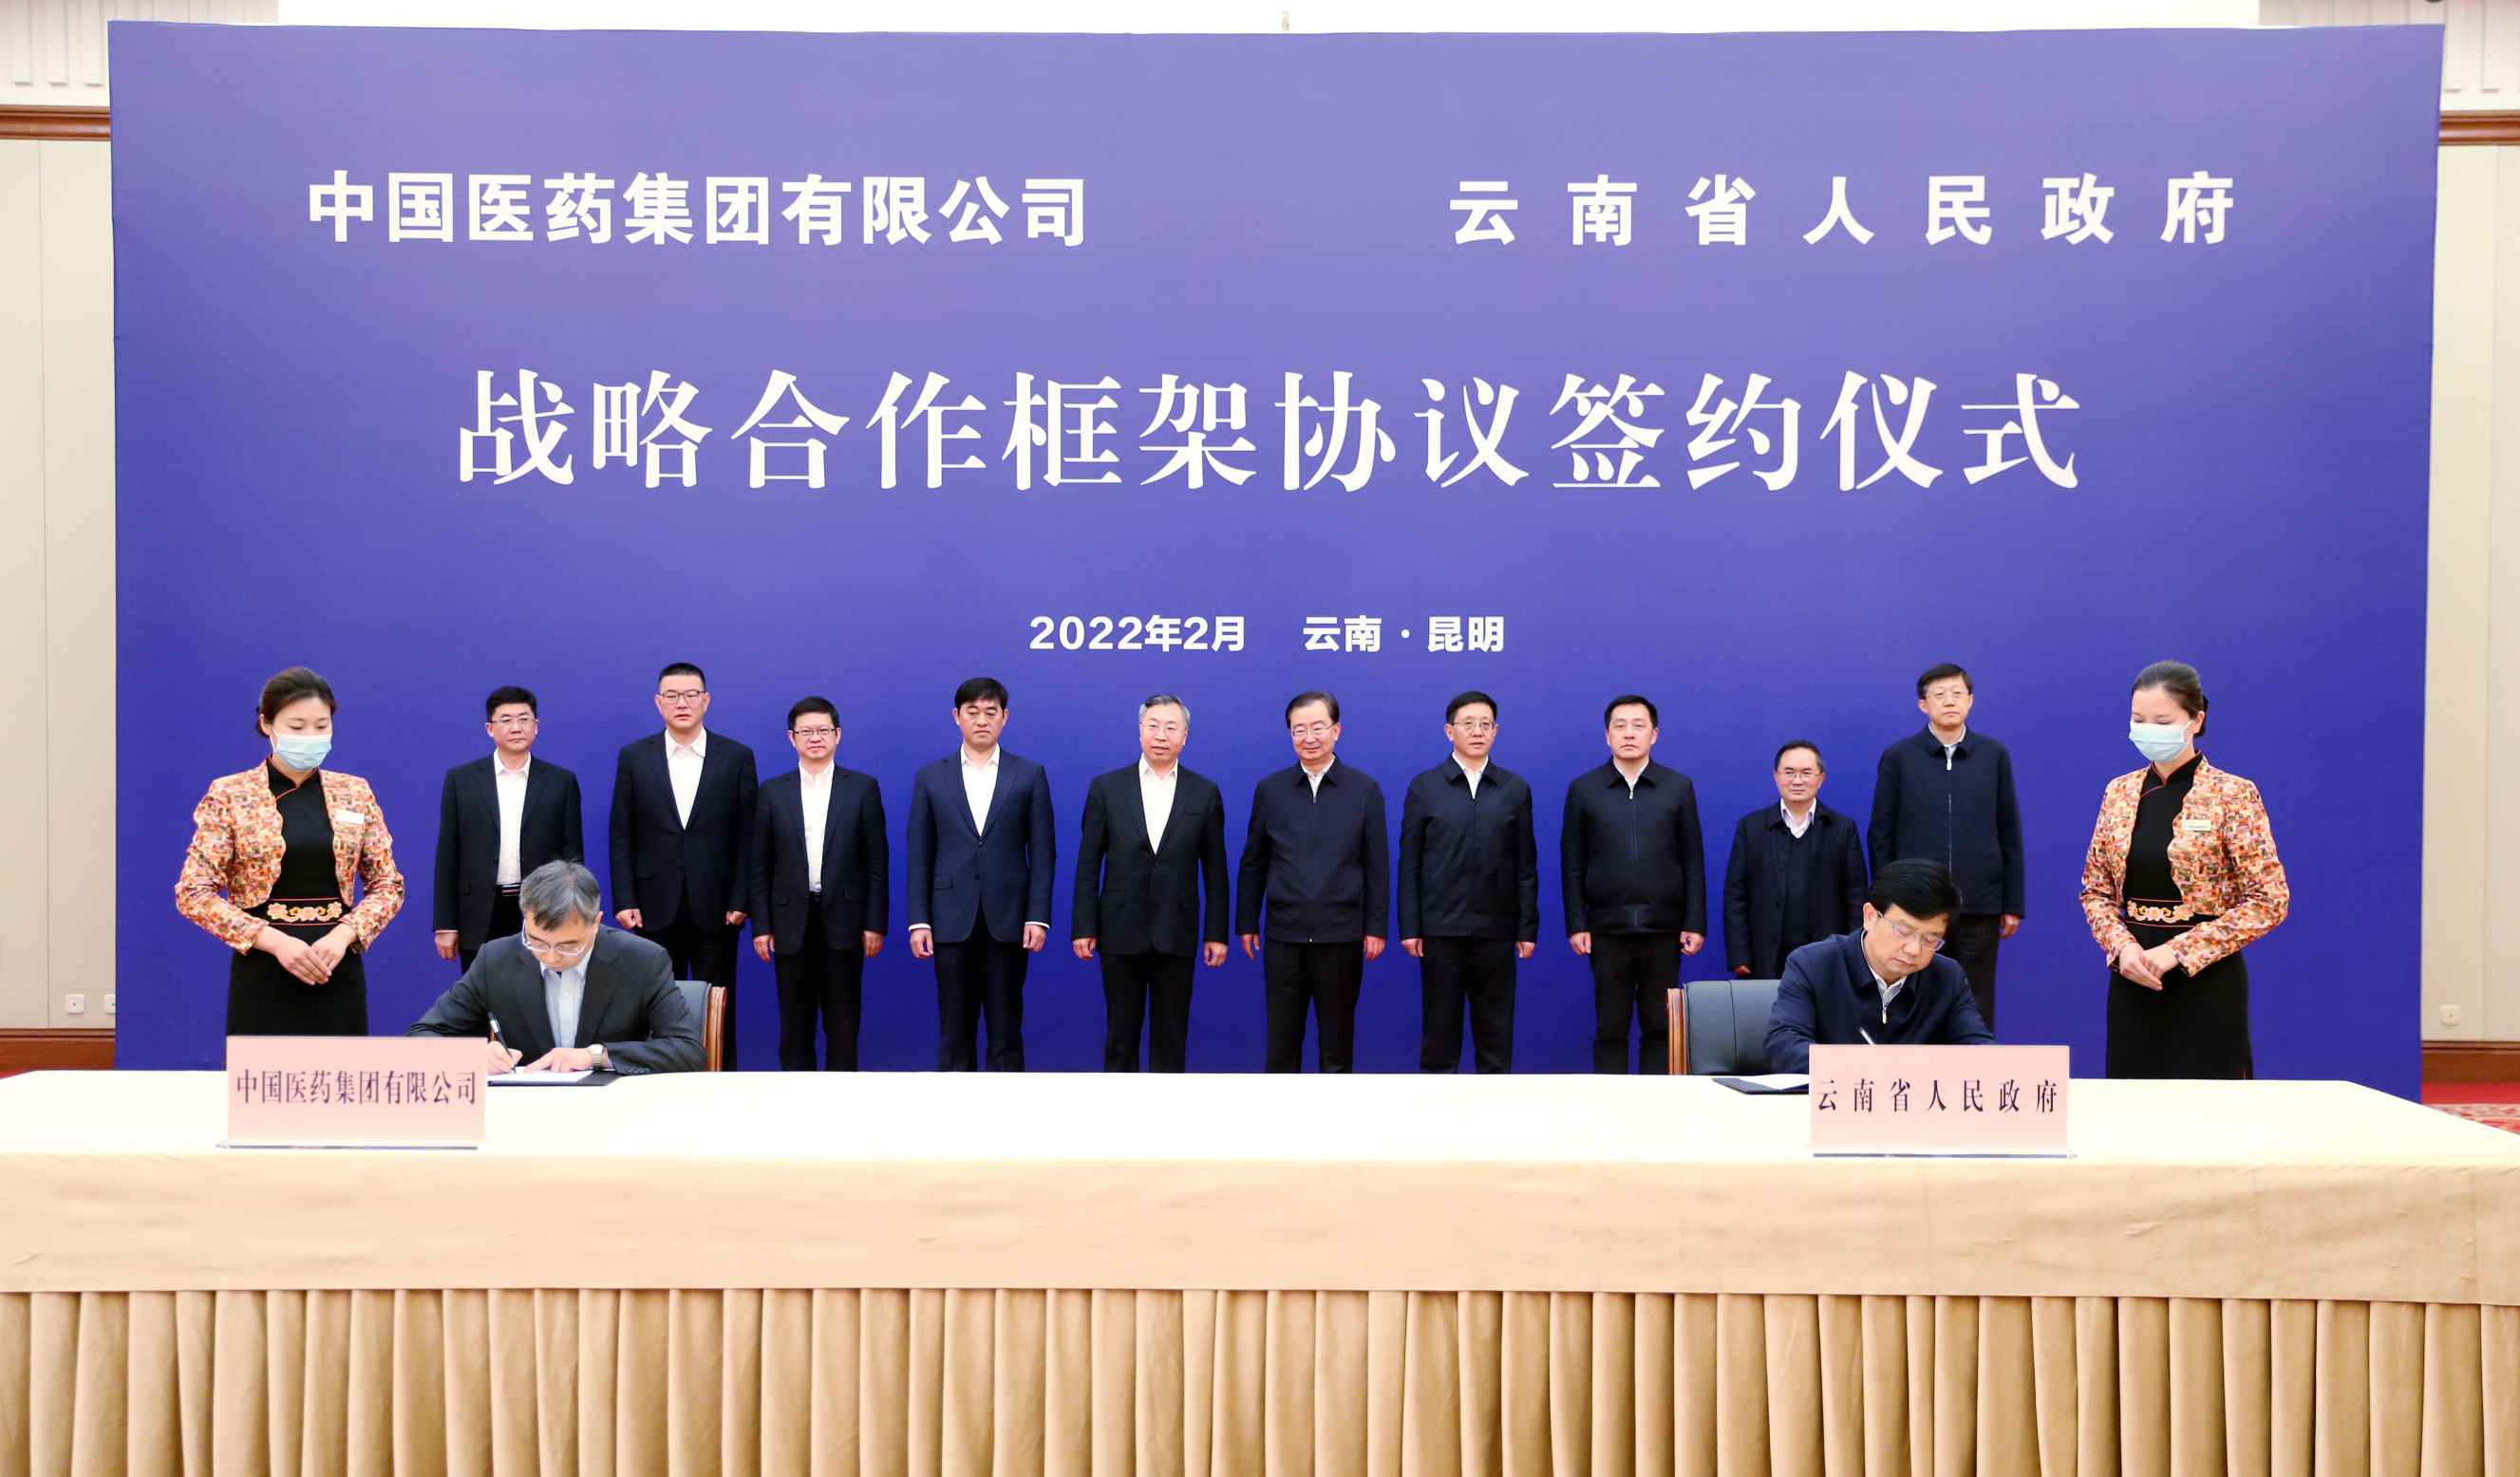 2022年2月27日，国药集团与云南省人民政府签署战略合作框架协议